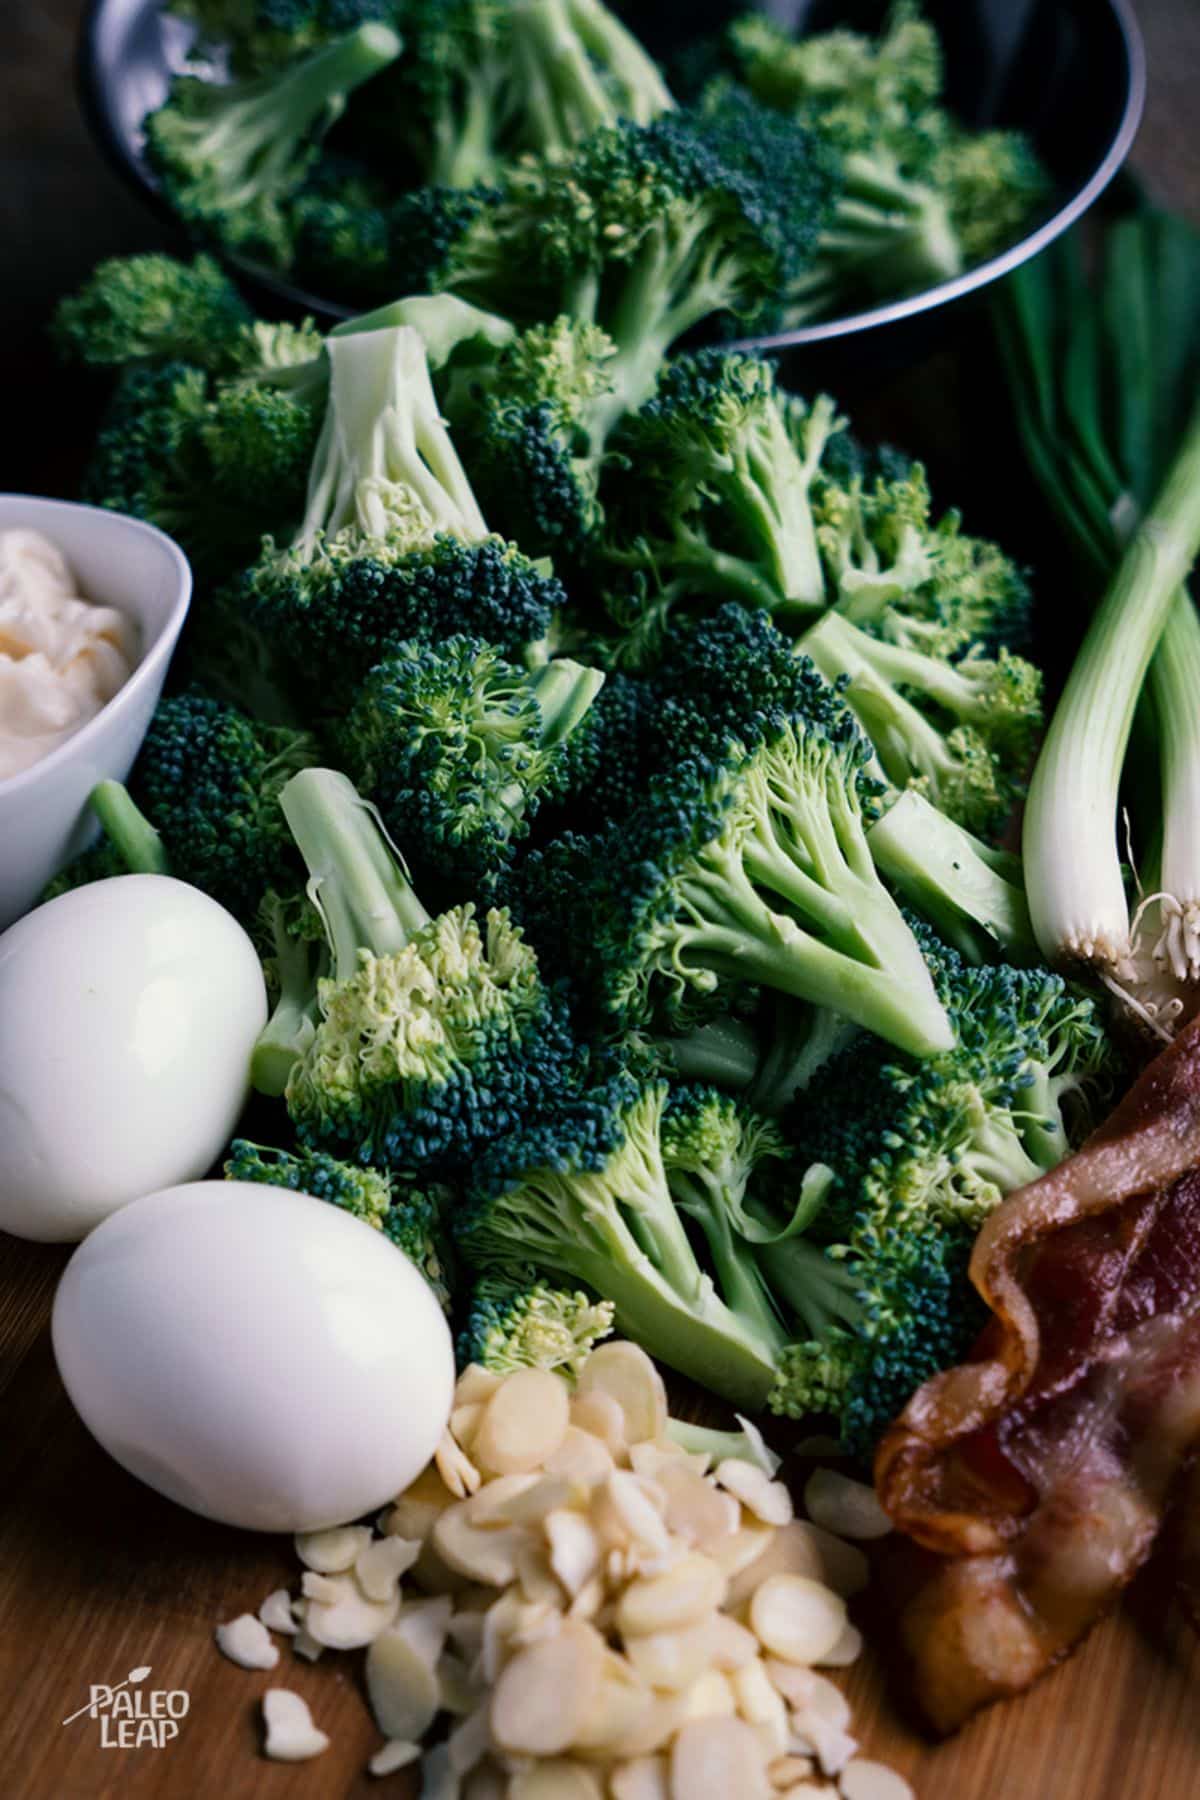 Broccoli and Egg Salad preparation.